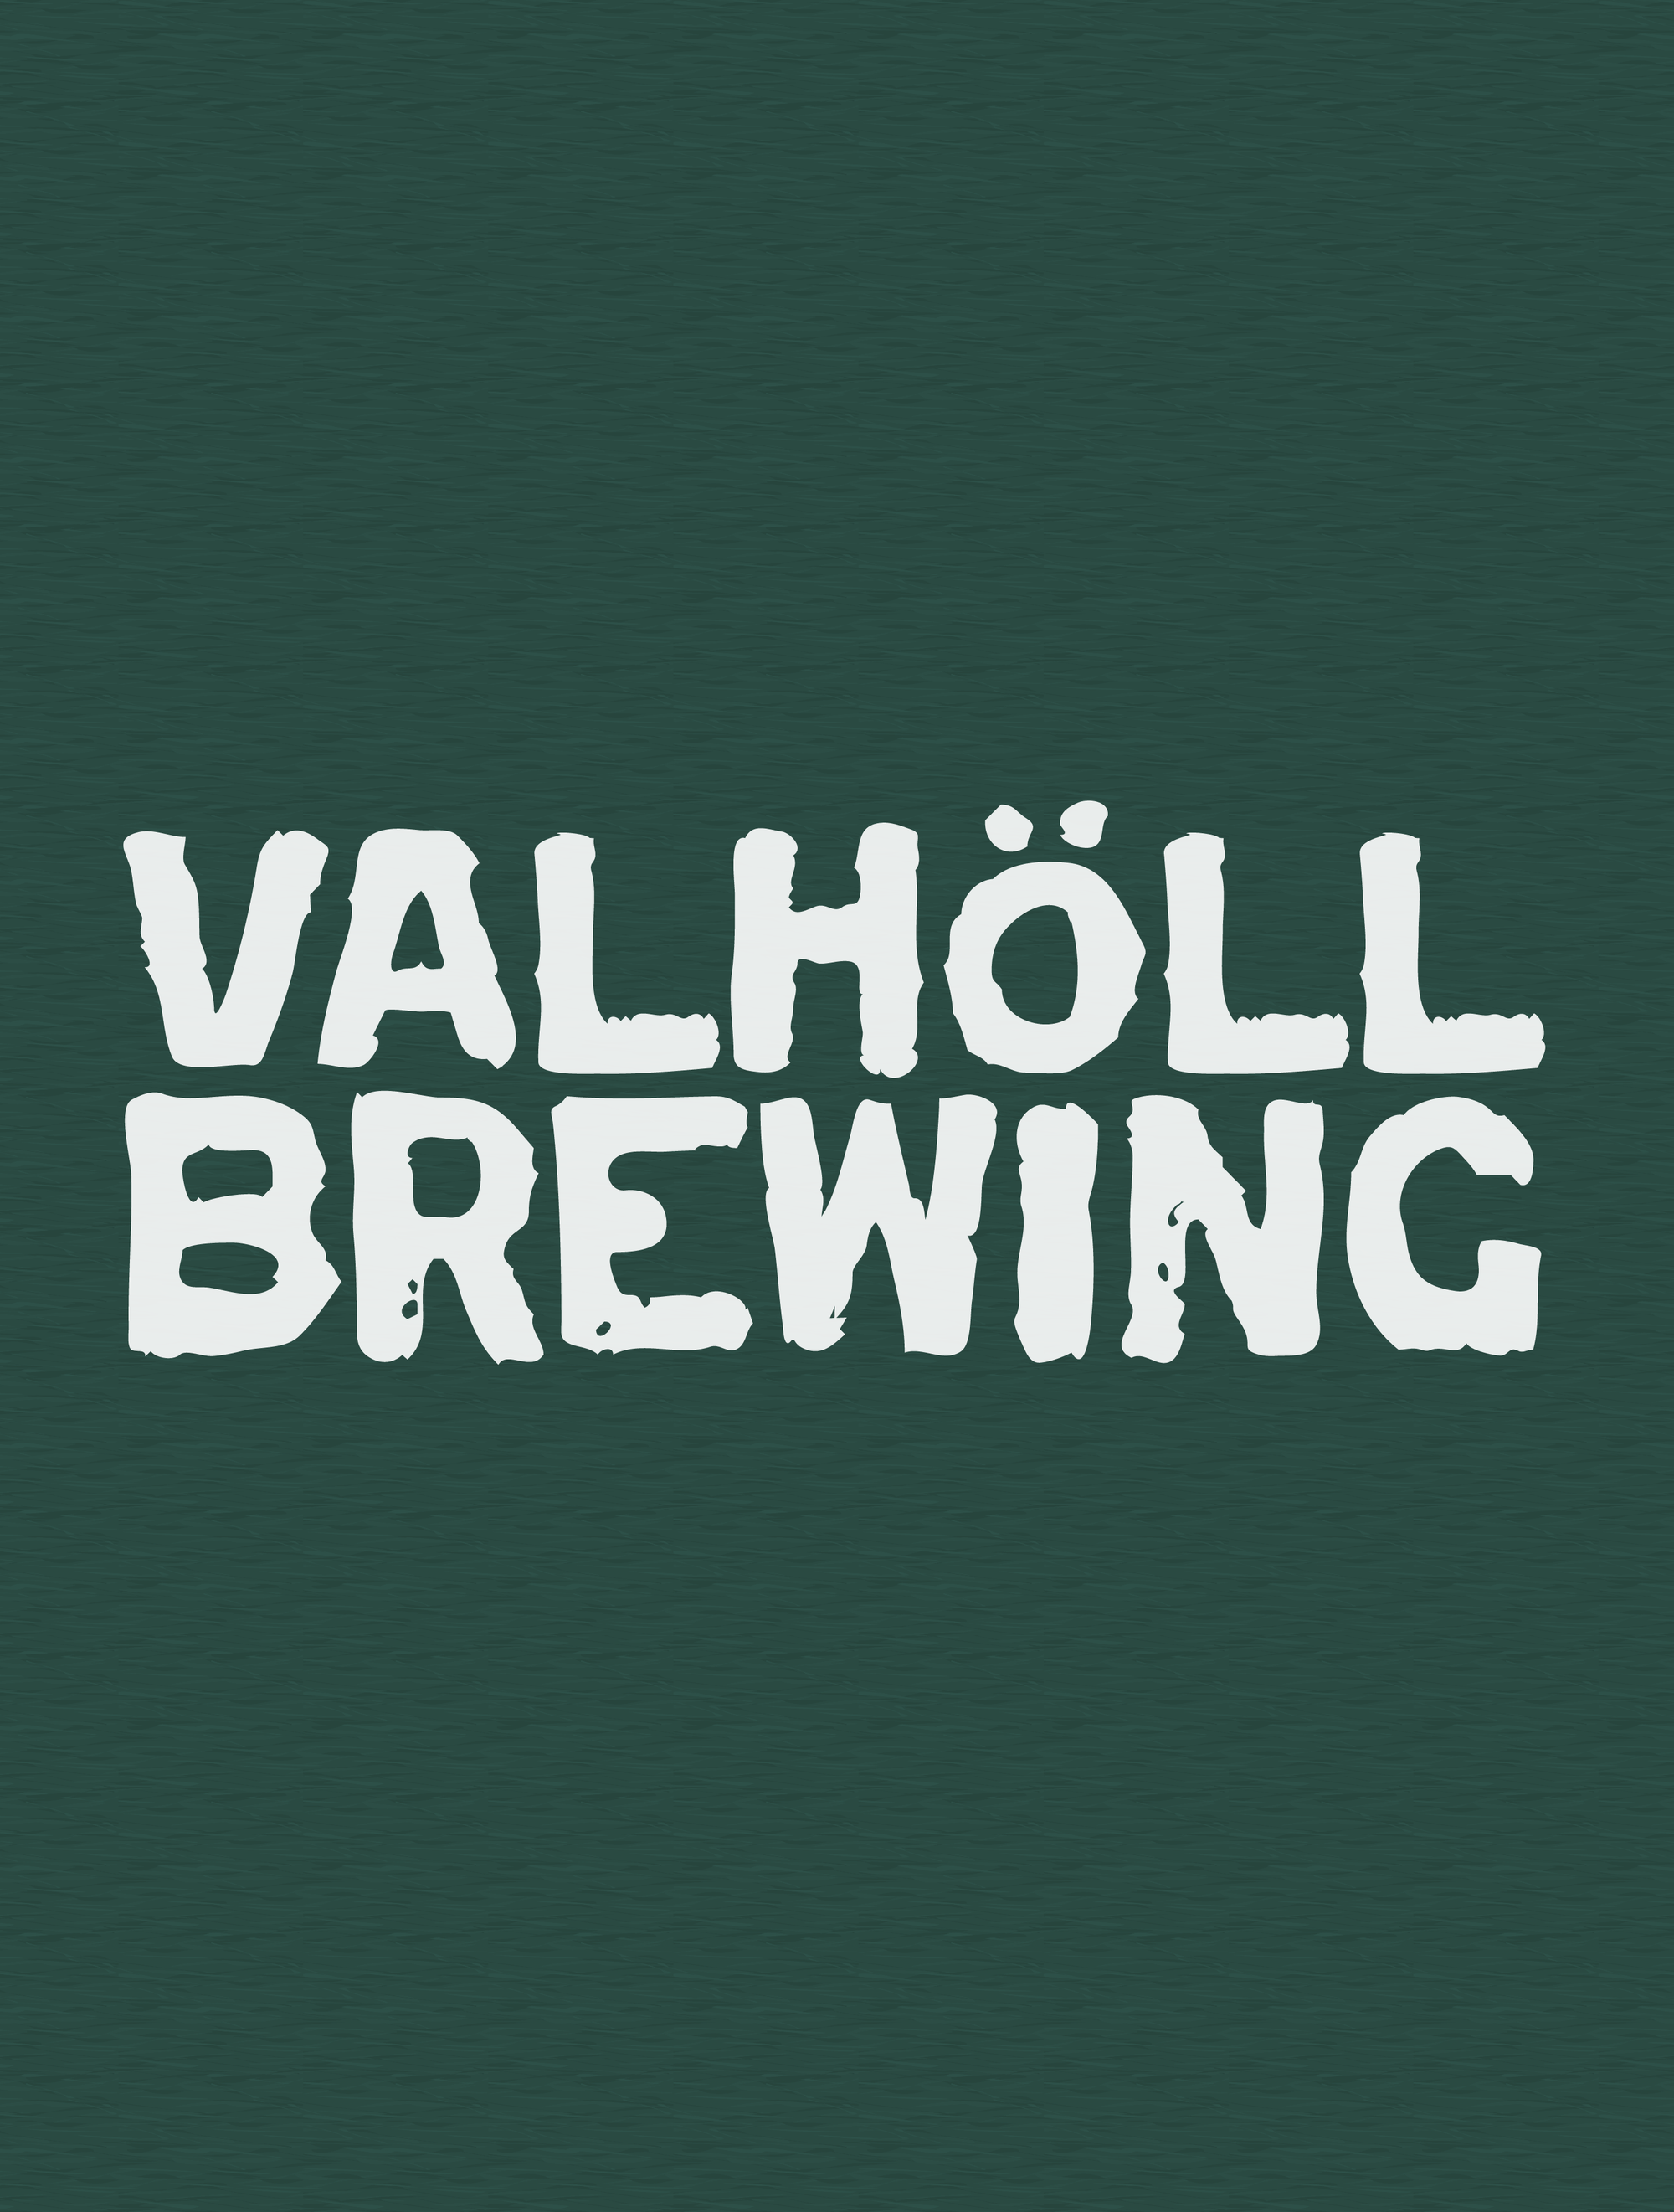 Valhöll Brewing · Heather Forest Tee